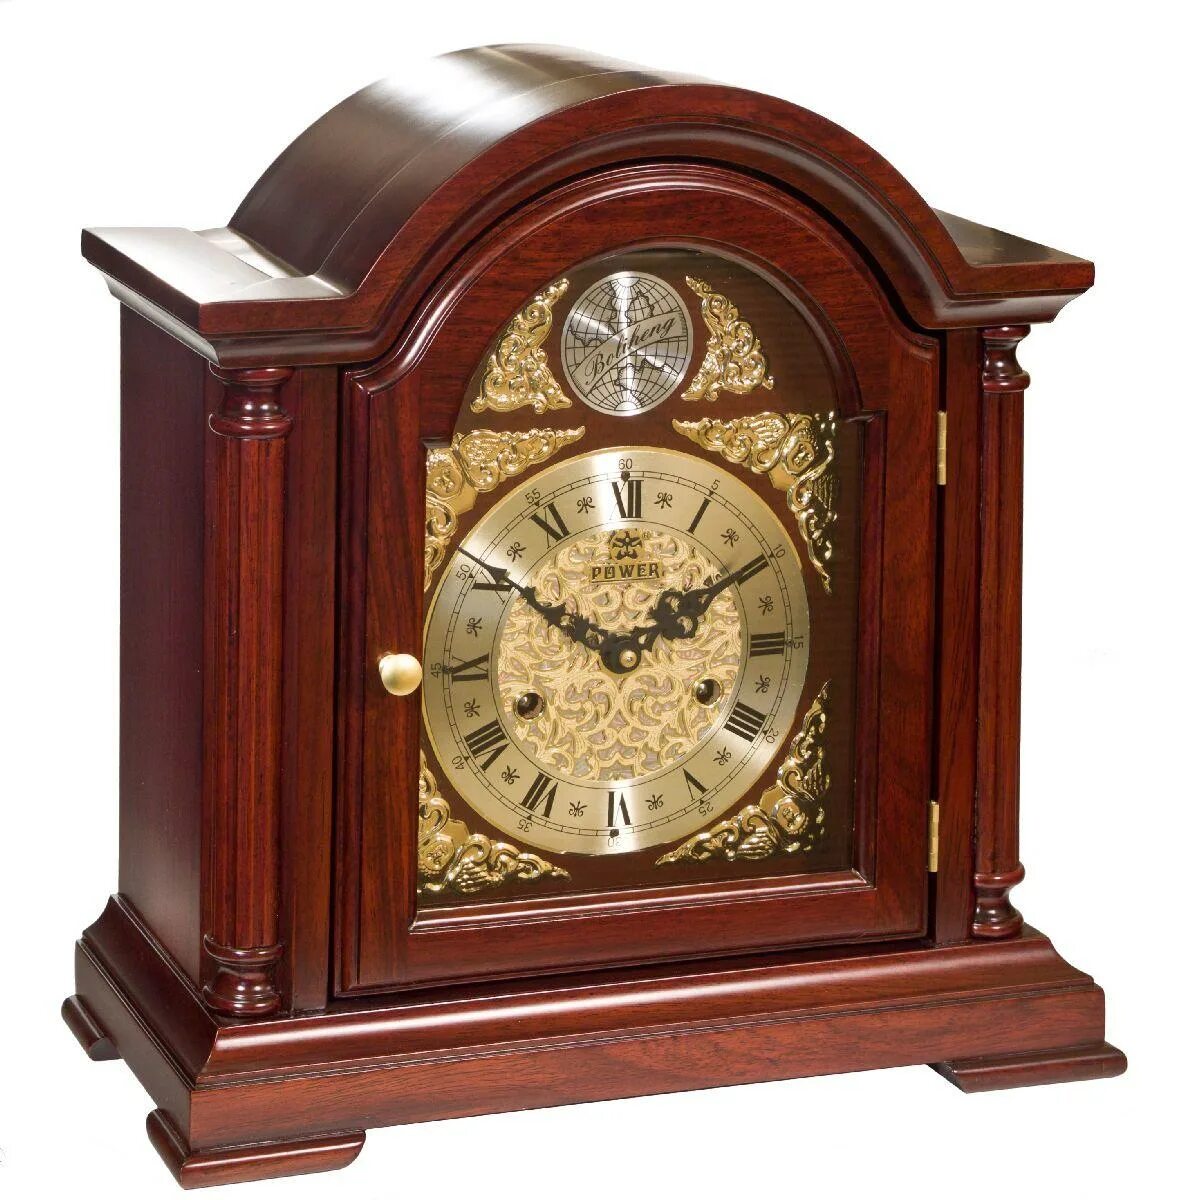 Купить часы в вологде. Часы каминные Vostok. Каминные часы т-9728-2 каминные/настольные часы с боем Восток. Механические ЧАСЫЧАСЫ.